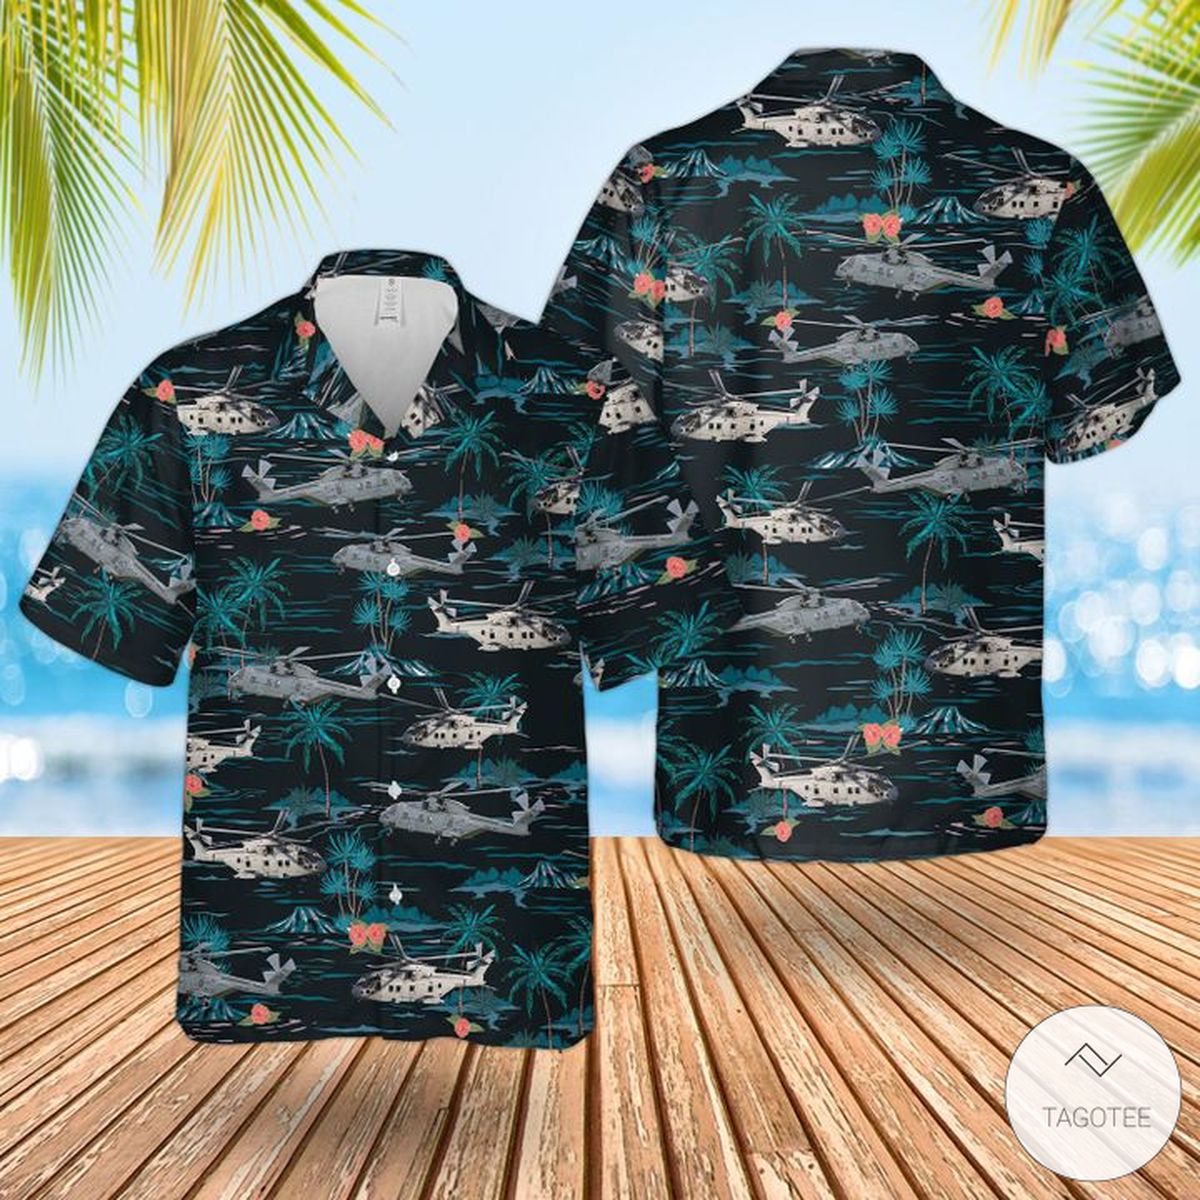 Rn Merlin Mk4 Hawaiian Shirts